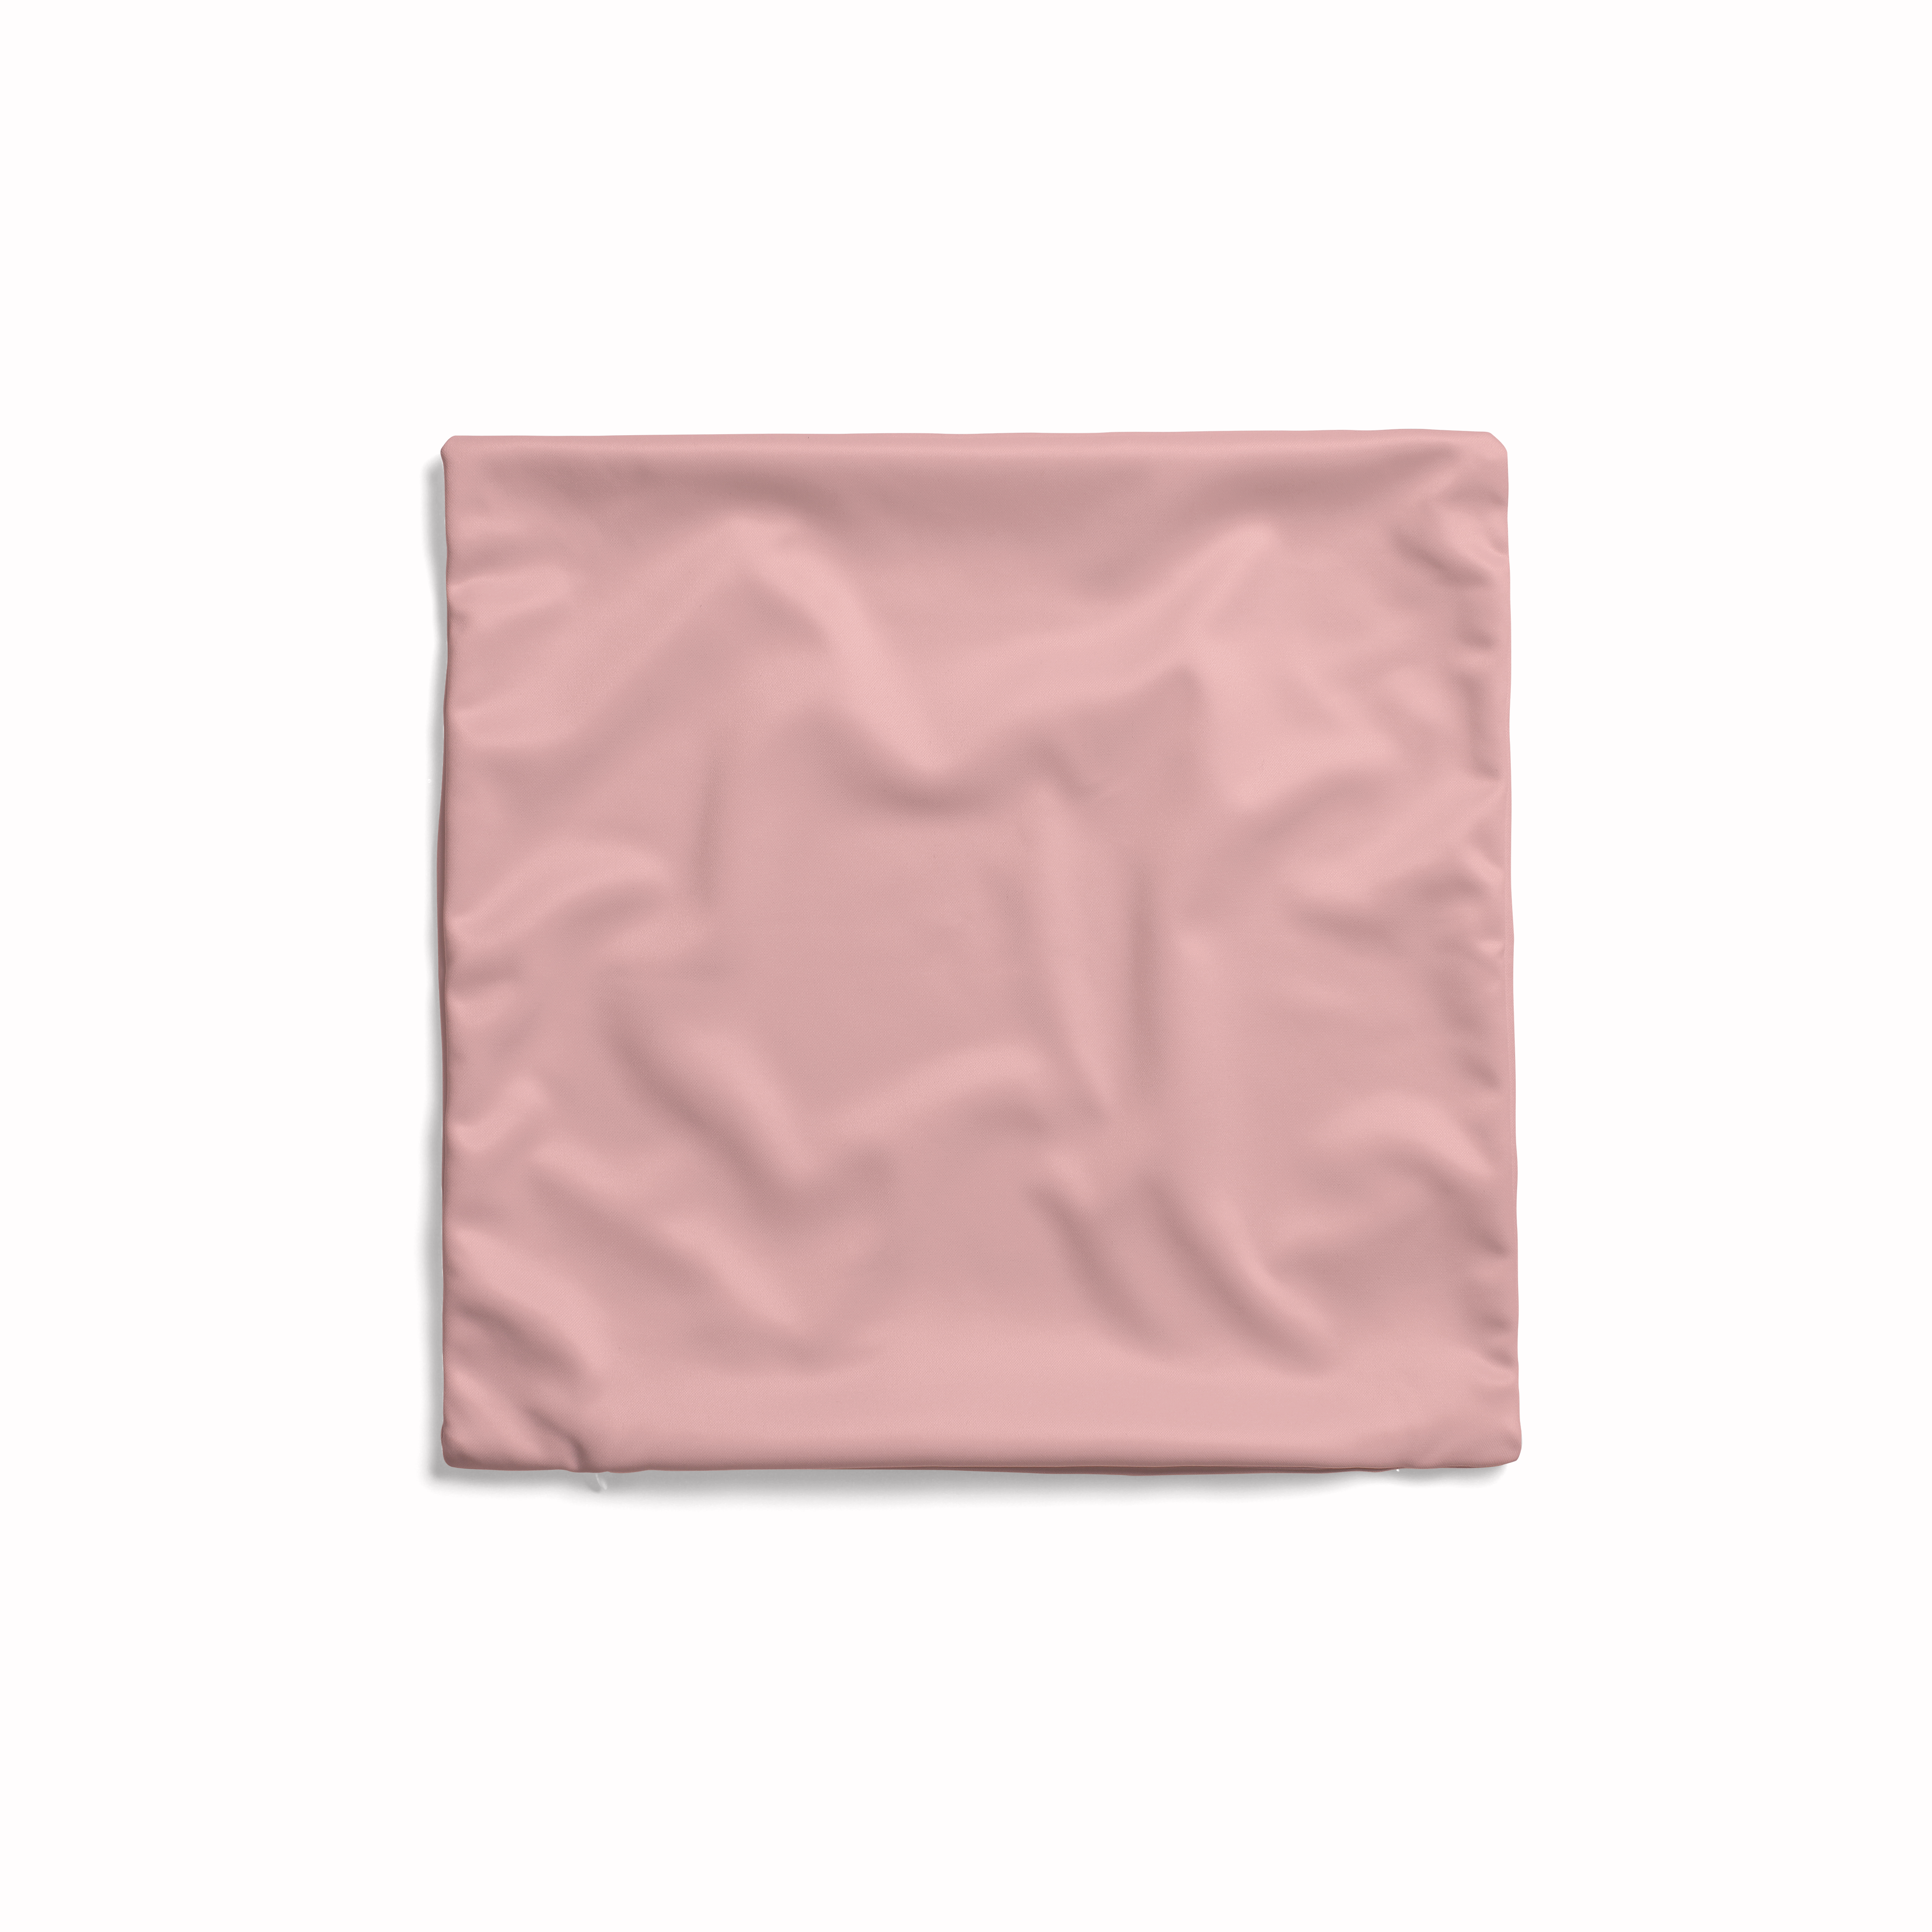 Plain Pink Cushion